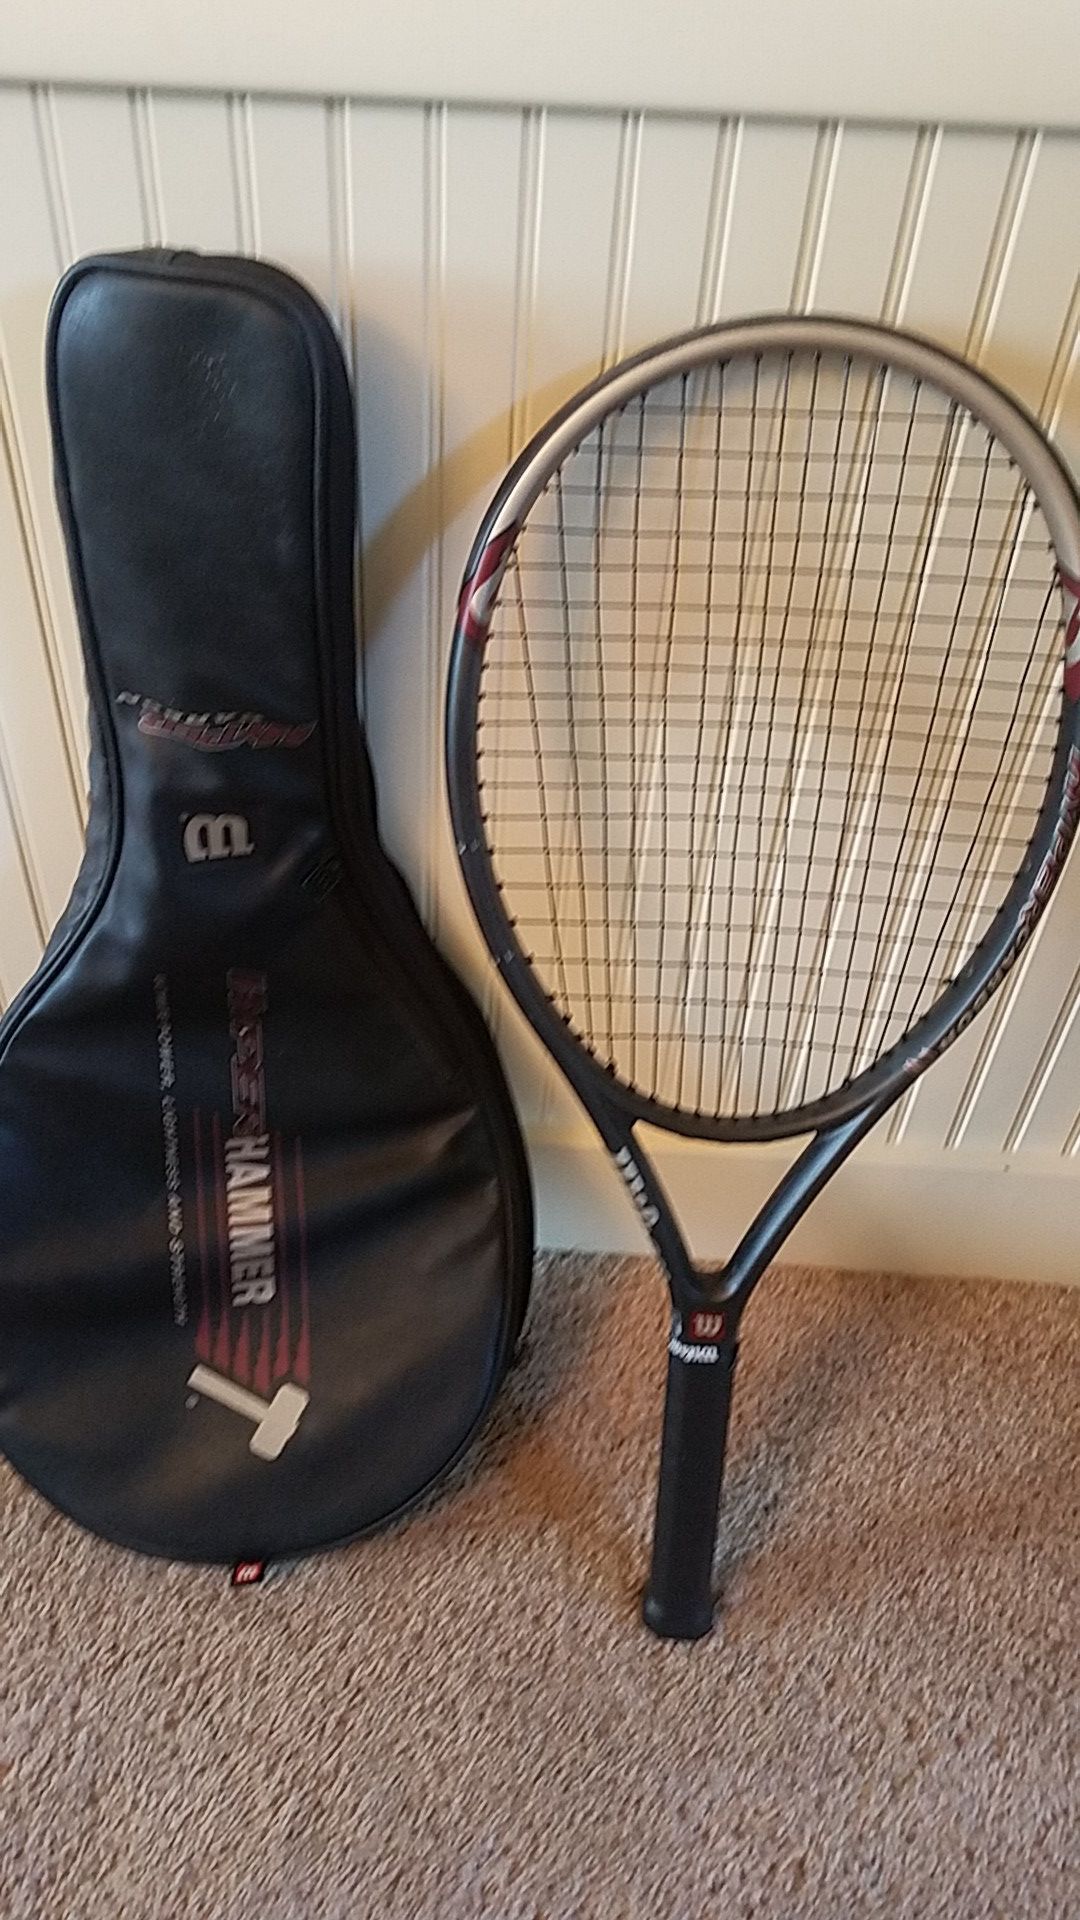 Wilson tennis racket Hyper Hammer 3.3